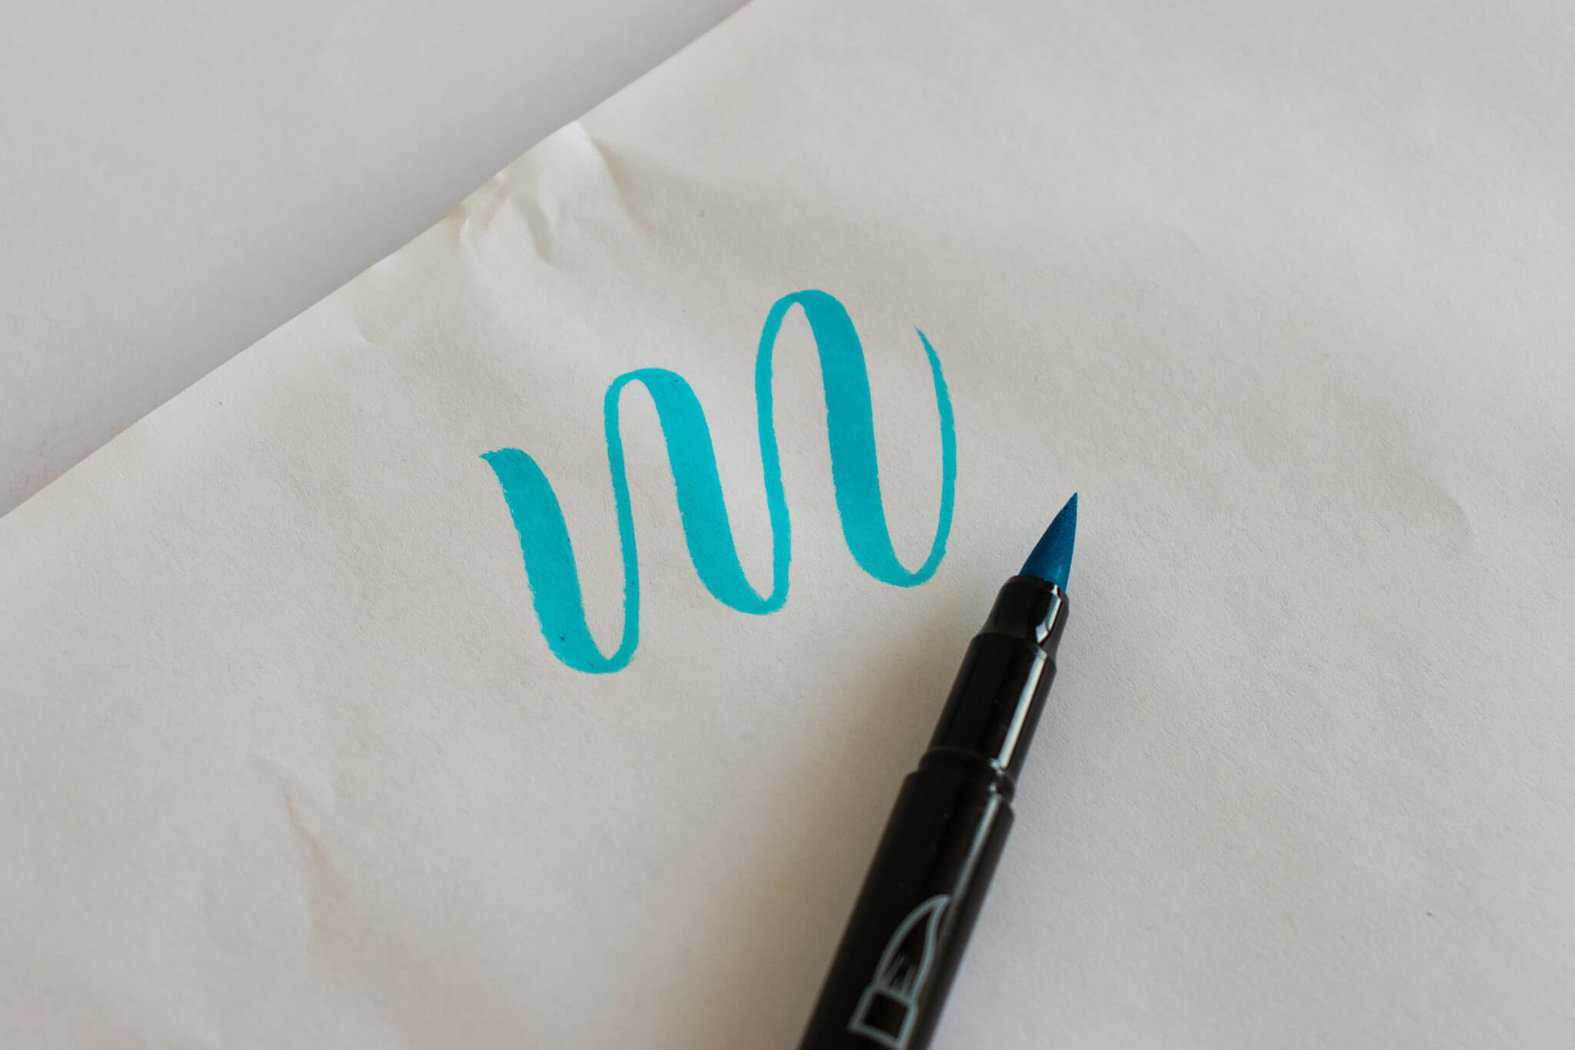 The Best Brush Pens for Hand Lettering Beginners! ✨🌷 